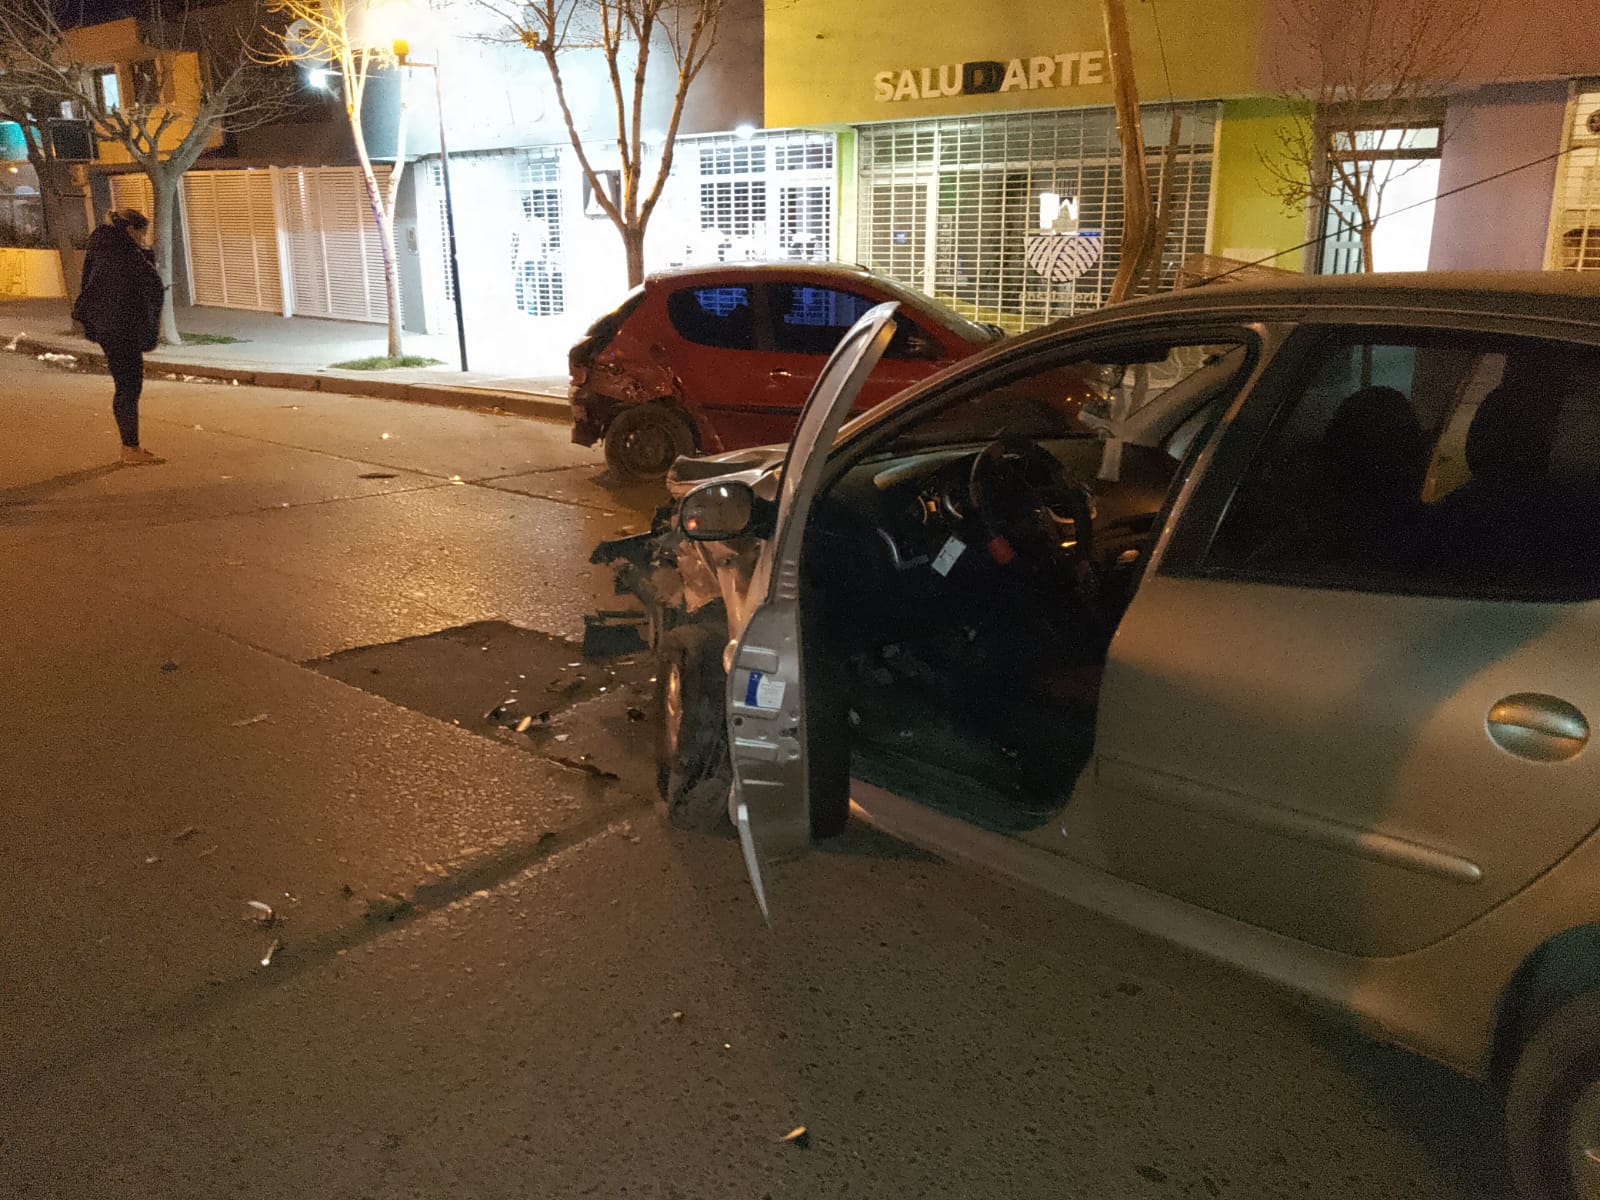 El conductor del vehículo gris, chocó de atrás al automovil que estaba estacionado. (Foto gentileza)